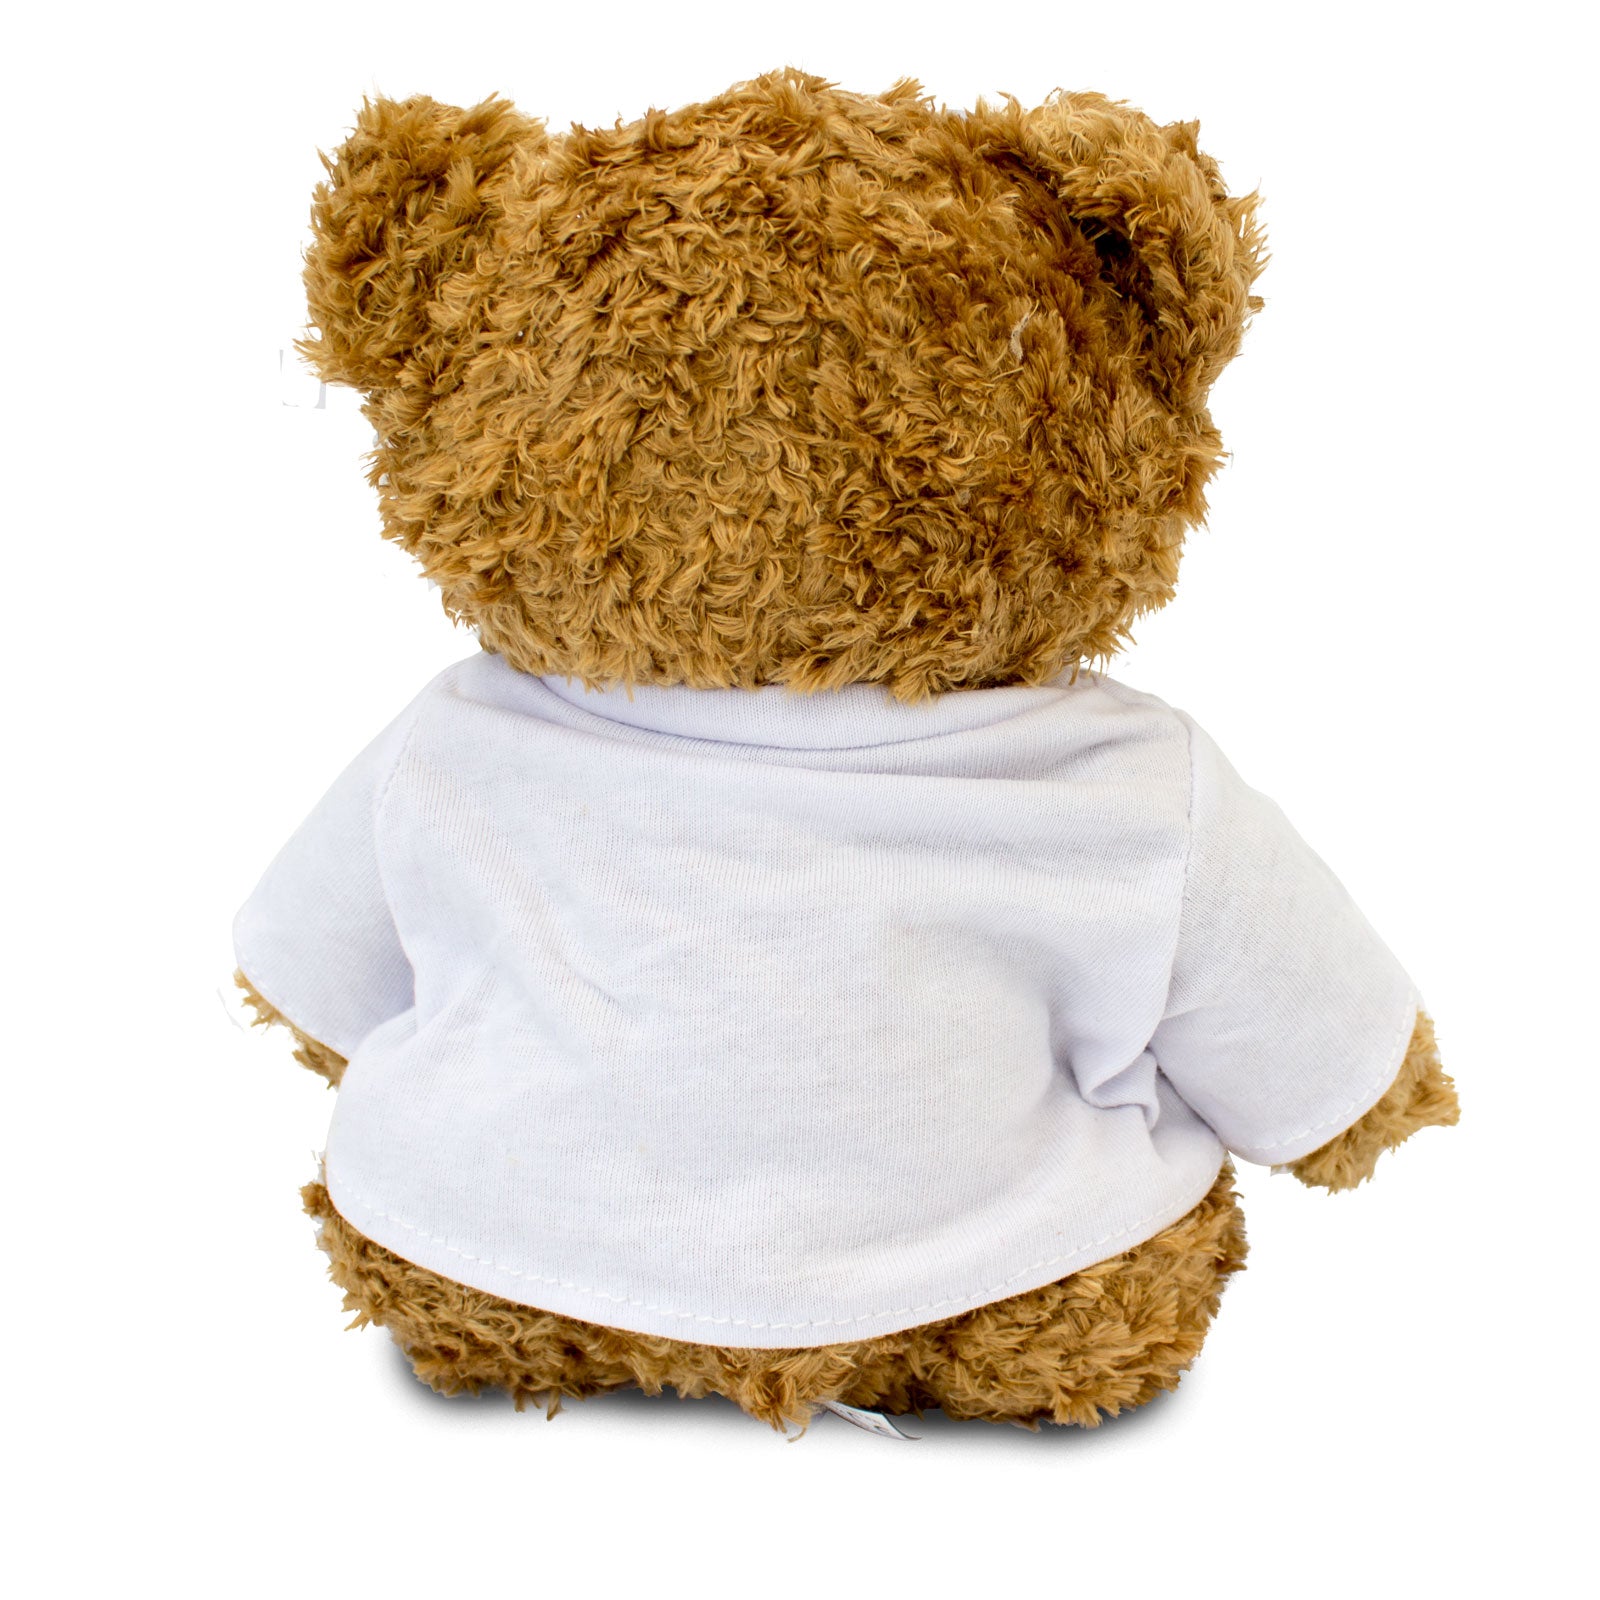 Get Well Soon Alain - Teddy Bear